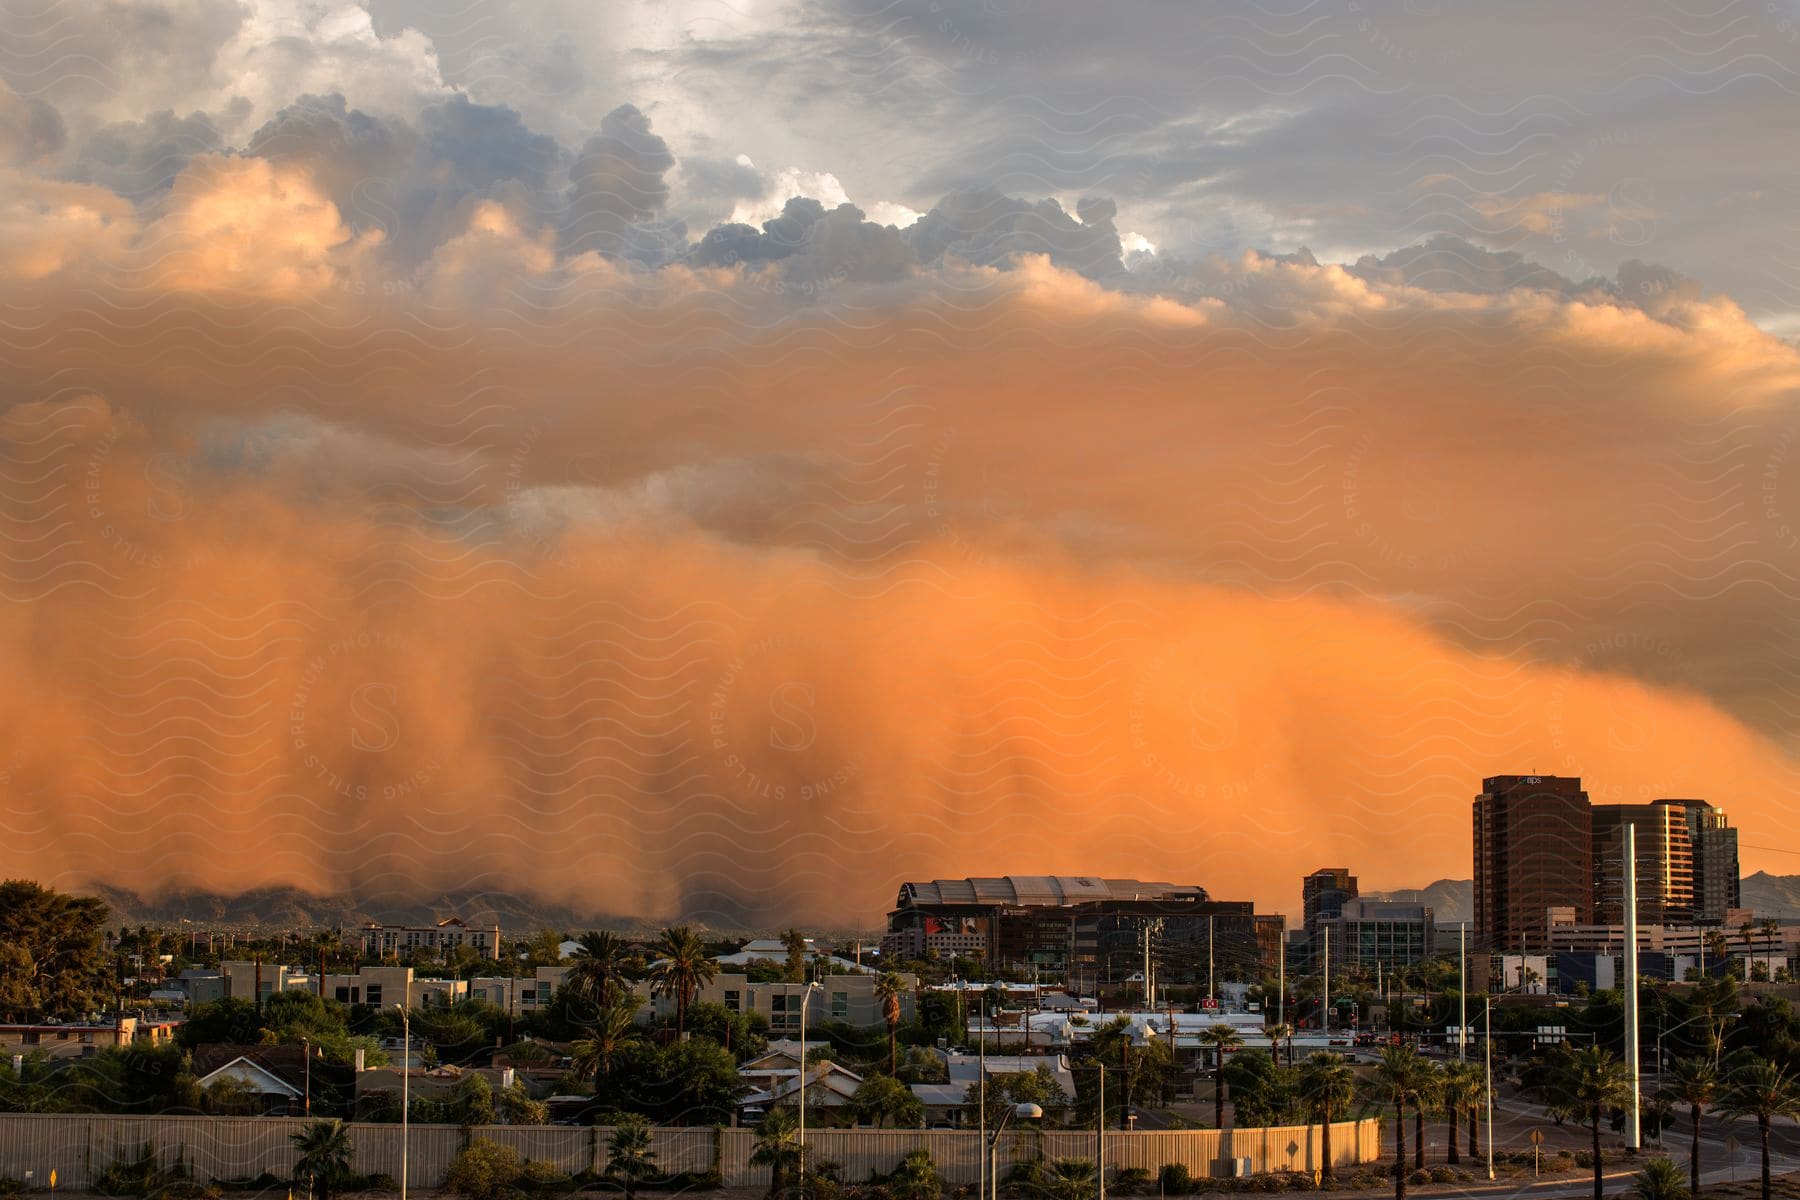 A massive dust storm engulfs the city of phoenix